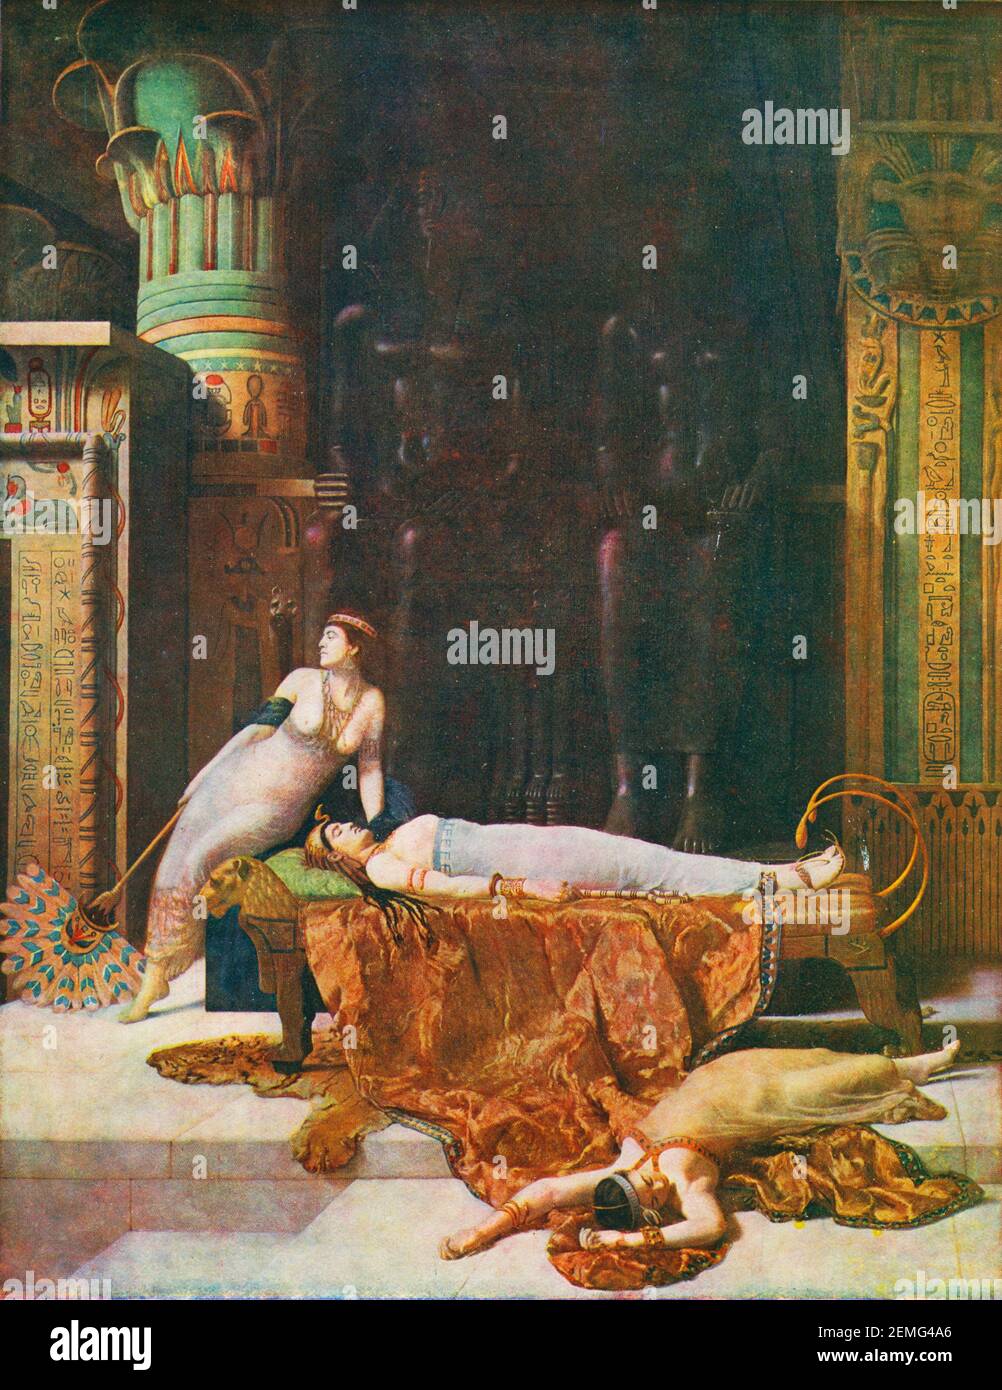 Une illustration de la mort de Cleopatra VII dernier souverain de Ptolemaic Egypte, 30 av. J.-C., à Alexandrie. Le tableau montre la reine sur son lit de mort et ses serviteurs Eiras et Charmion aussi dans leurs gorges de mort. D'une peinture de 1890 par John collier 1850 à 1934 Banque D'Images